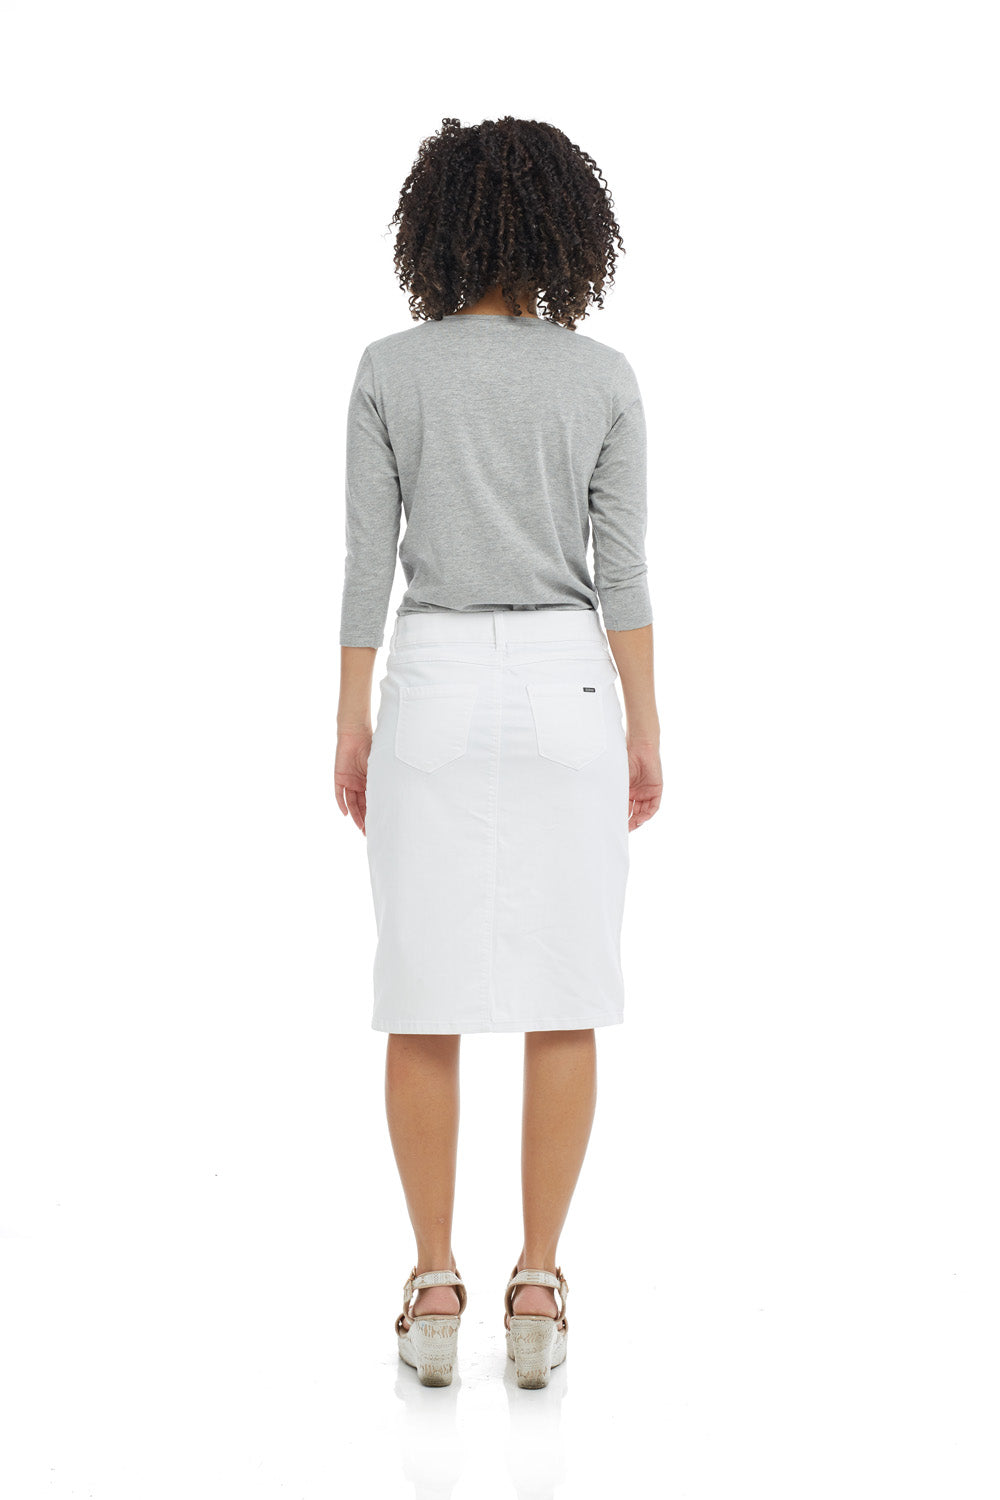 Esteez MANHATTAN Denim Skirt - Straight Knee Length Jean Skirt for WOMEN - WHITE